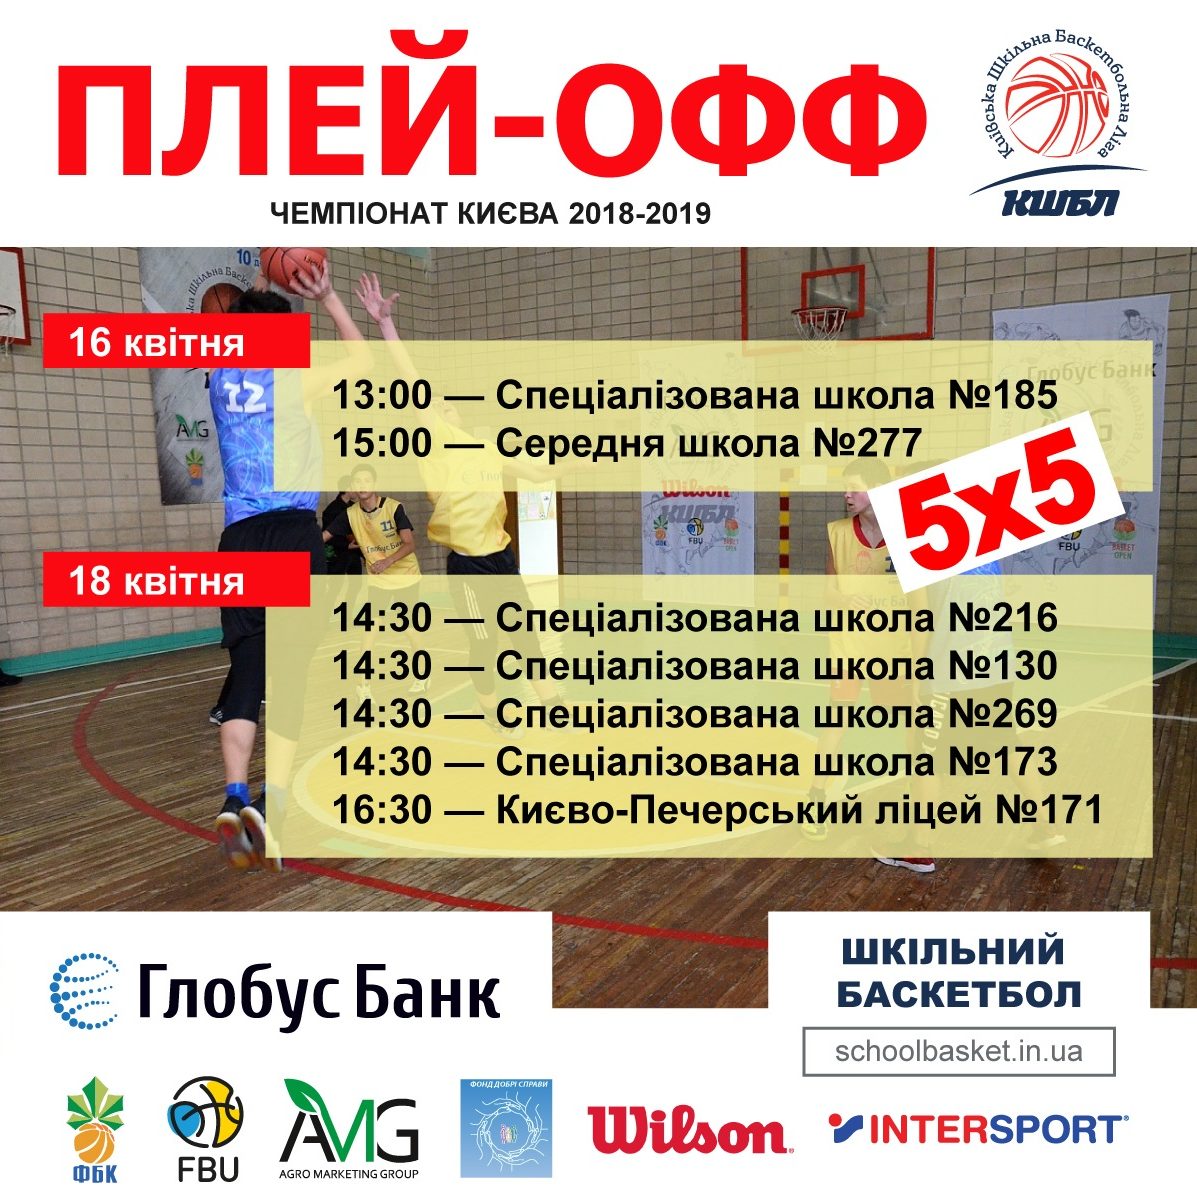 Плей-офф Київської шкільної Баскетбольної Ліги 5x5 сезону 2018-2019